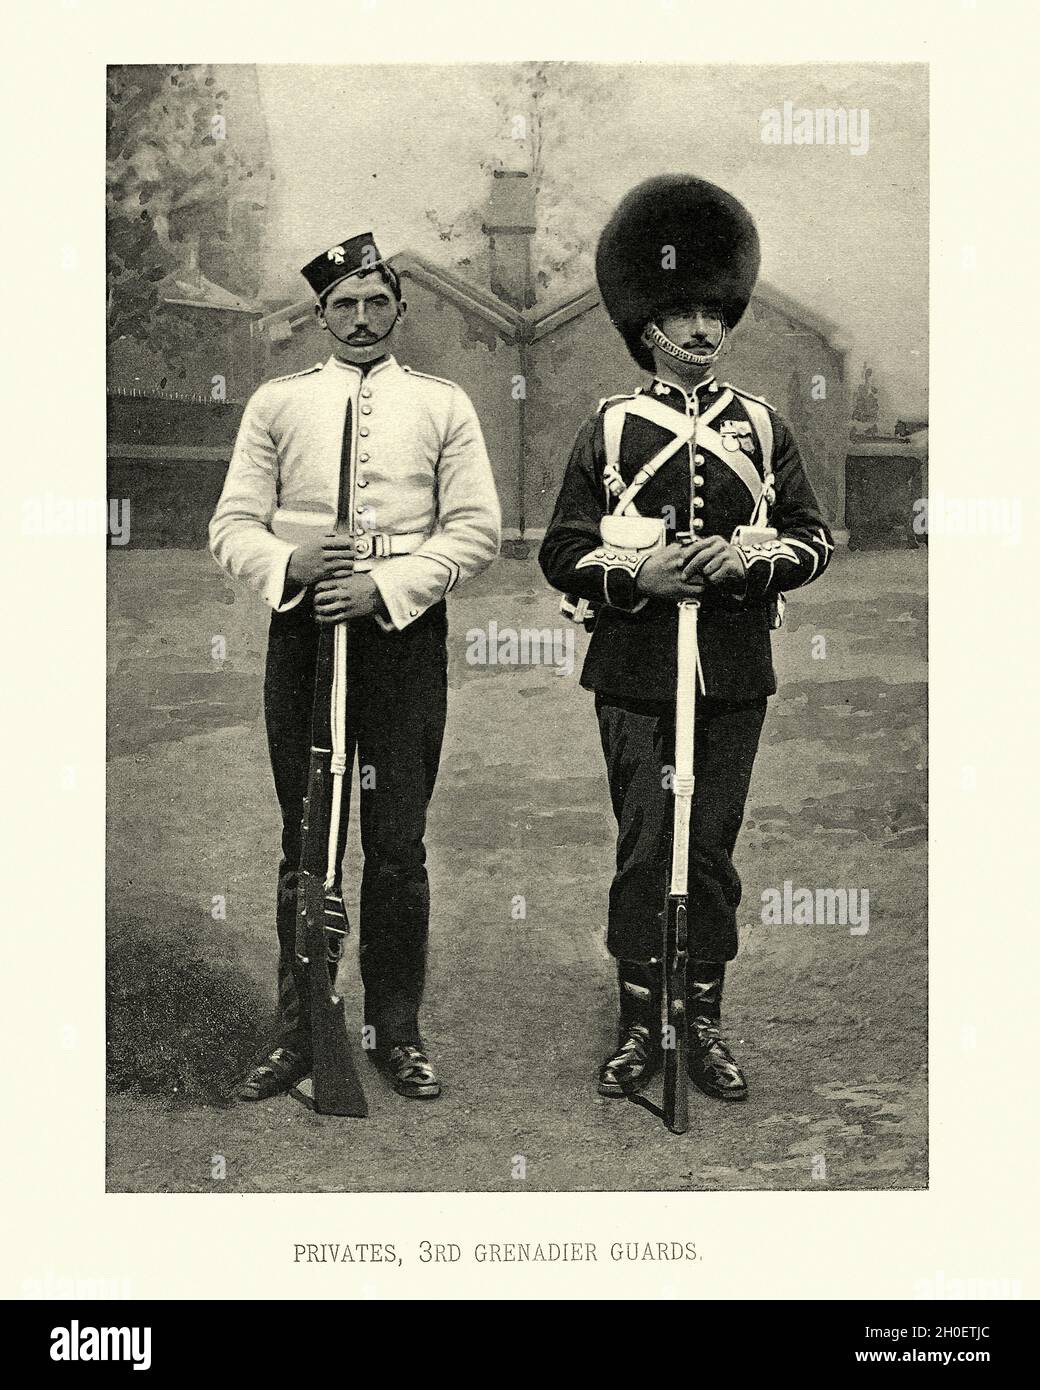 Photogrtaphe vintage des soldats de l'armée britannique, Privats 3e Grenadier Guards, uniforme militaire, victorien 19e siècle Banque D'Images